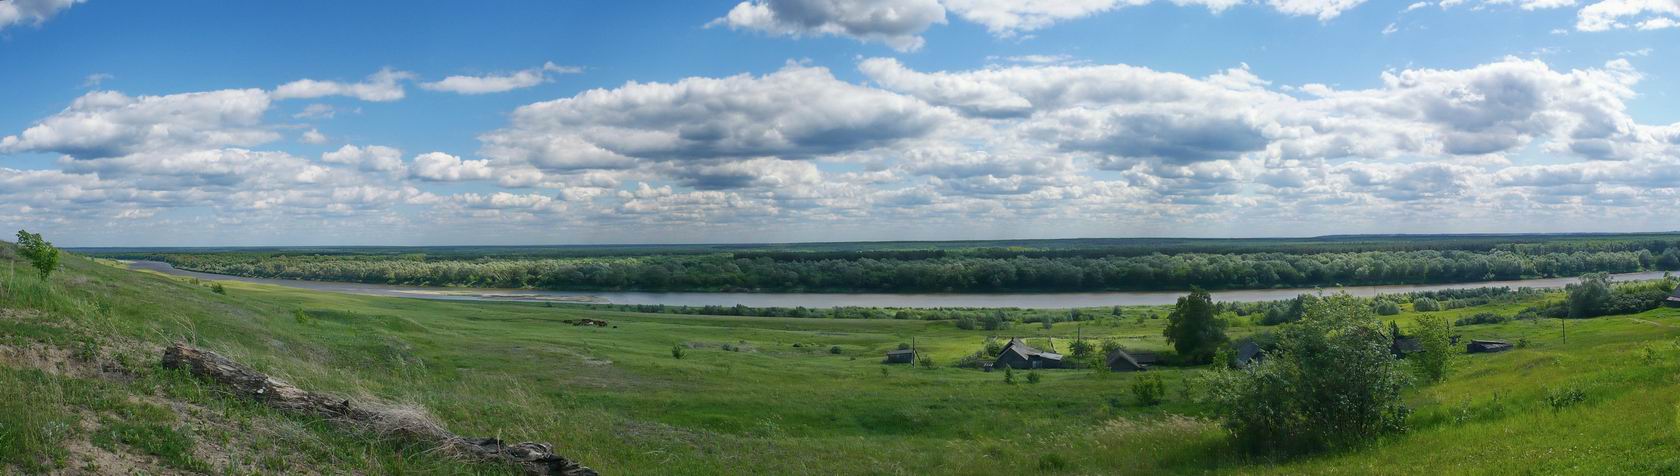 Село Языково, изображение ландшафта.